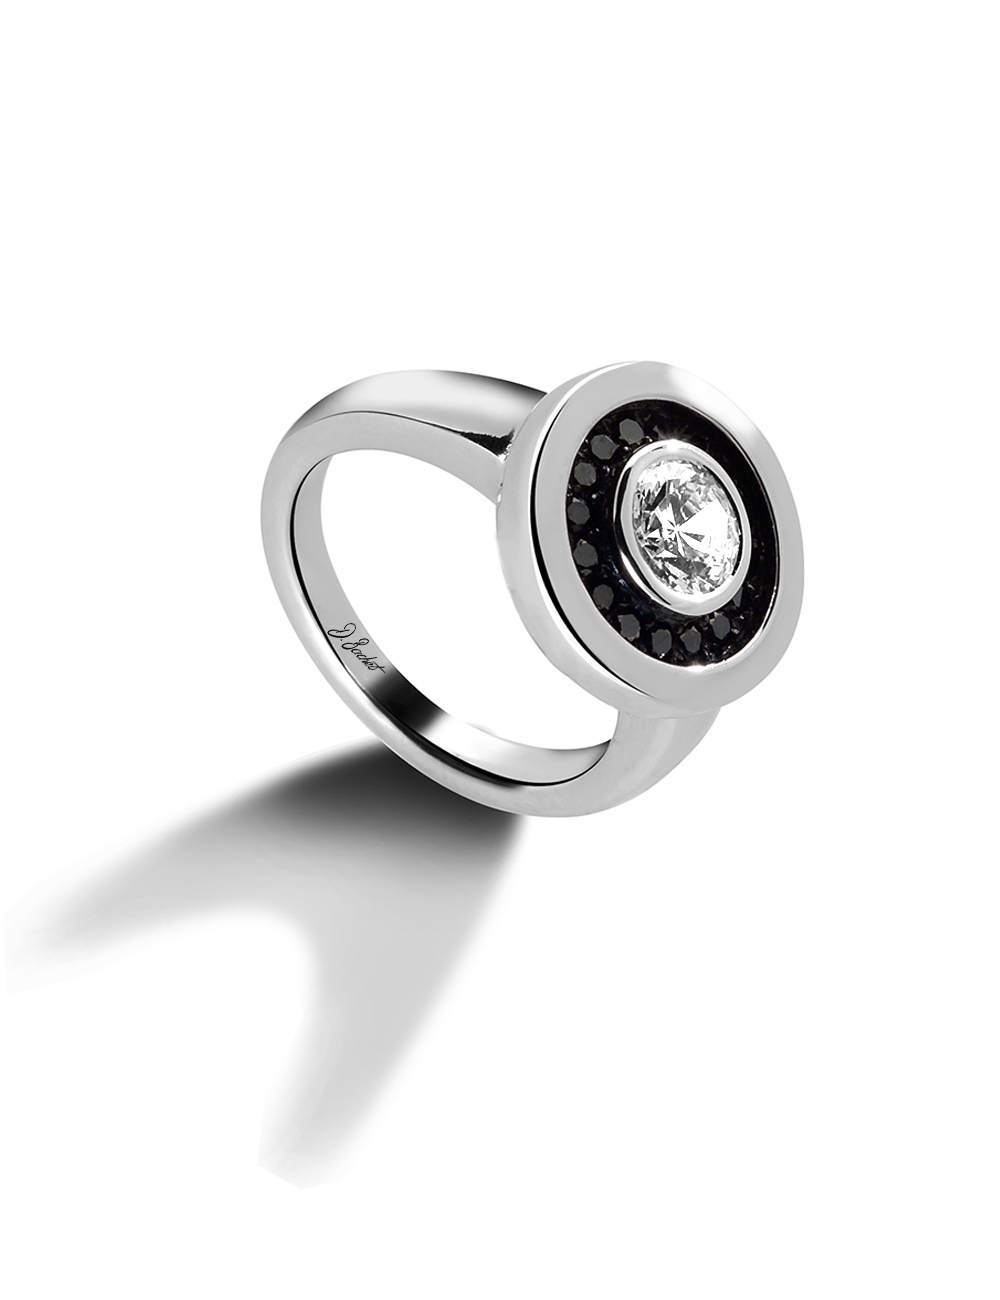 Bague femme Allure en platine, diamant blanc 0.20 ct, entouré de diamants noirs, élégance moderne.